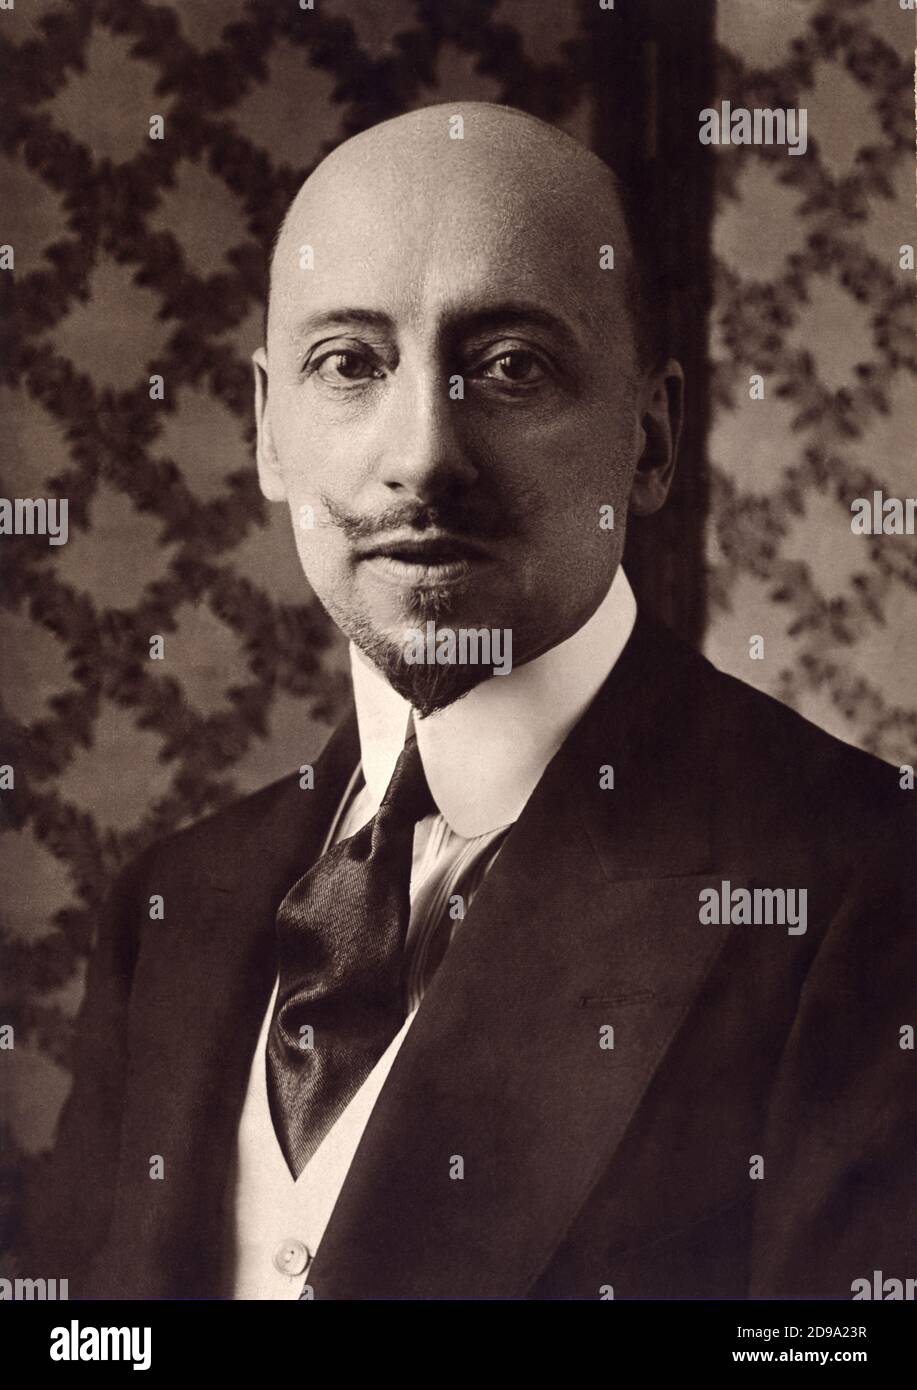 The italian poet , politician and writer GABRIELE D'ANNUNZIO ( 1863 - 1938 ) in France . - SCRITTORE - LETTERATURA - LITERATURE - letterato - POETA - POESIA - POETRY  - baffi - moustache - portrait - ritratto - Dannunzio - D'Annunzio - D' ANNUNZIO - cravatta - tie - collar - colletto - baffi - moustache - beard - barba - testa pelata - calvo - FASHION - MODA - DANDY - ELEGANZA - ART NOUVEAU - BELLE EPOQUE - DECADENTISMO  ----  Archivio GBB Stock Photo